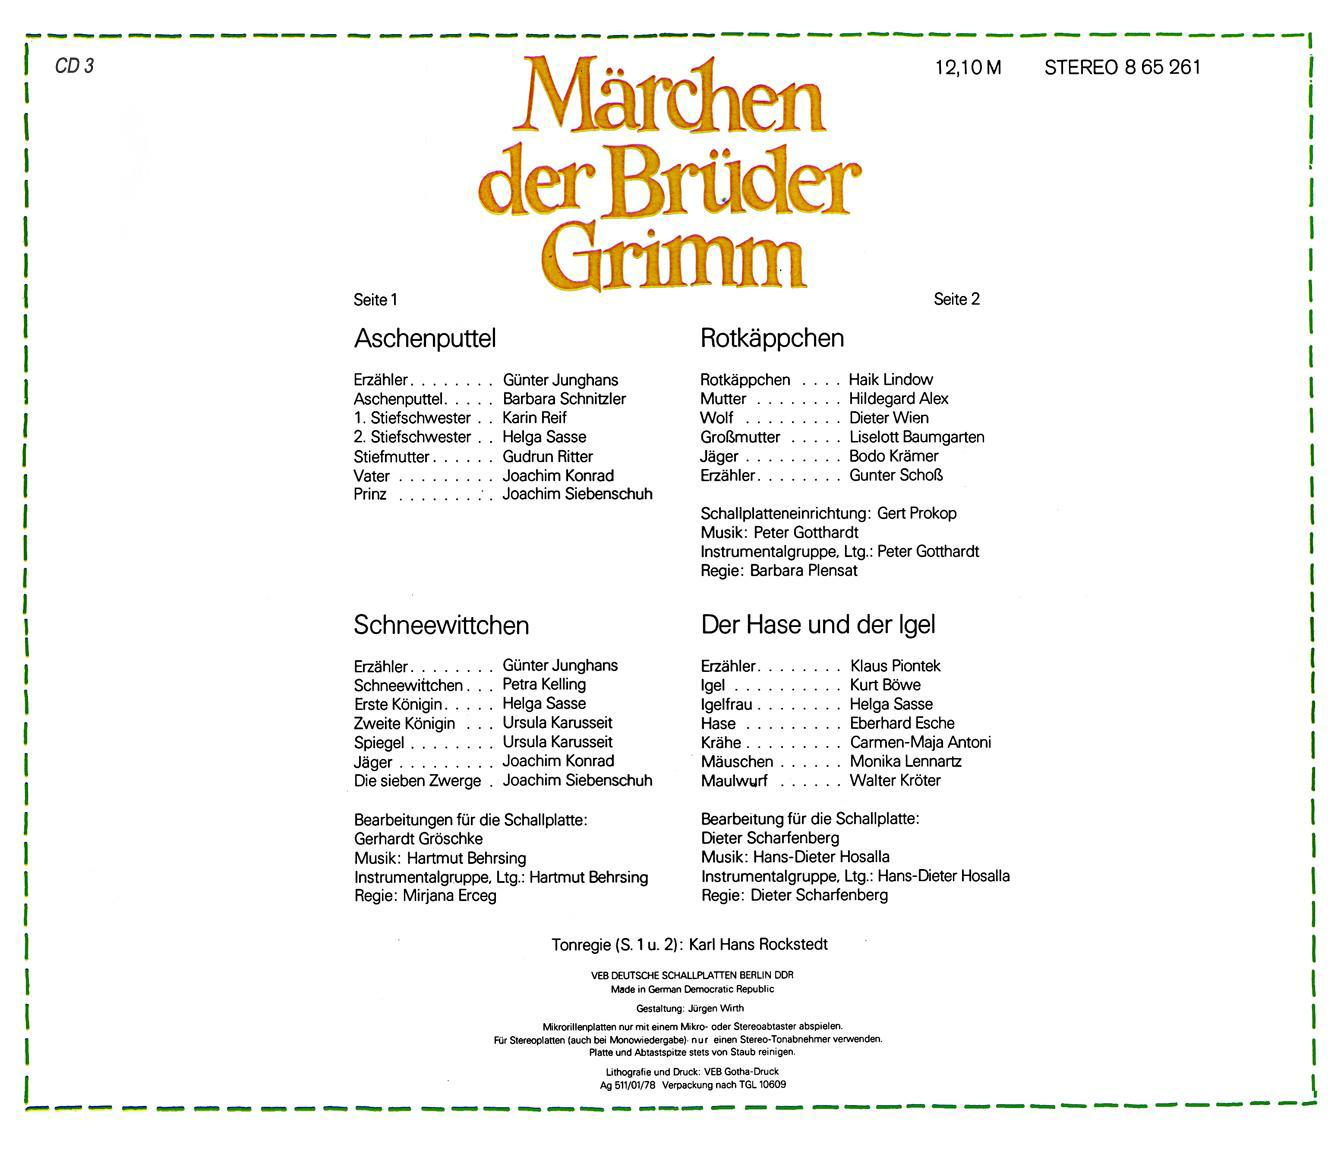 Märchen der Brüder Grimm CD 3